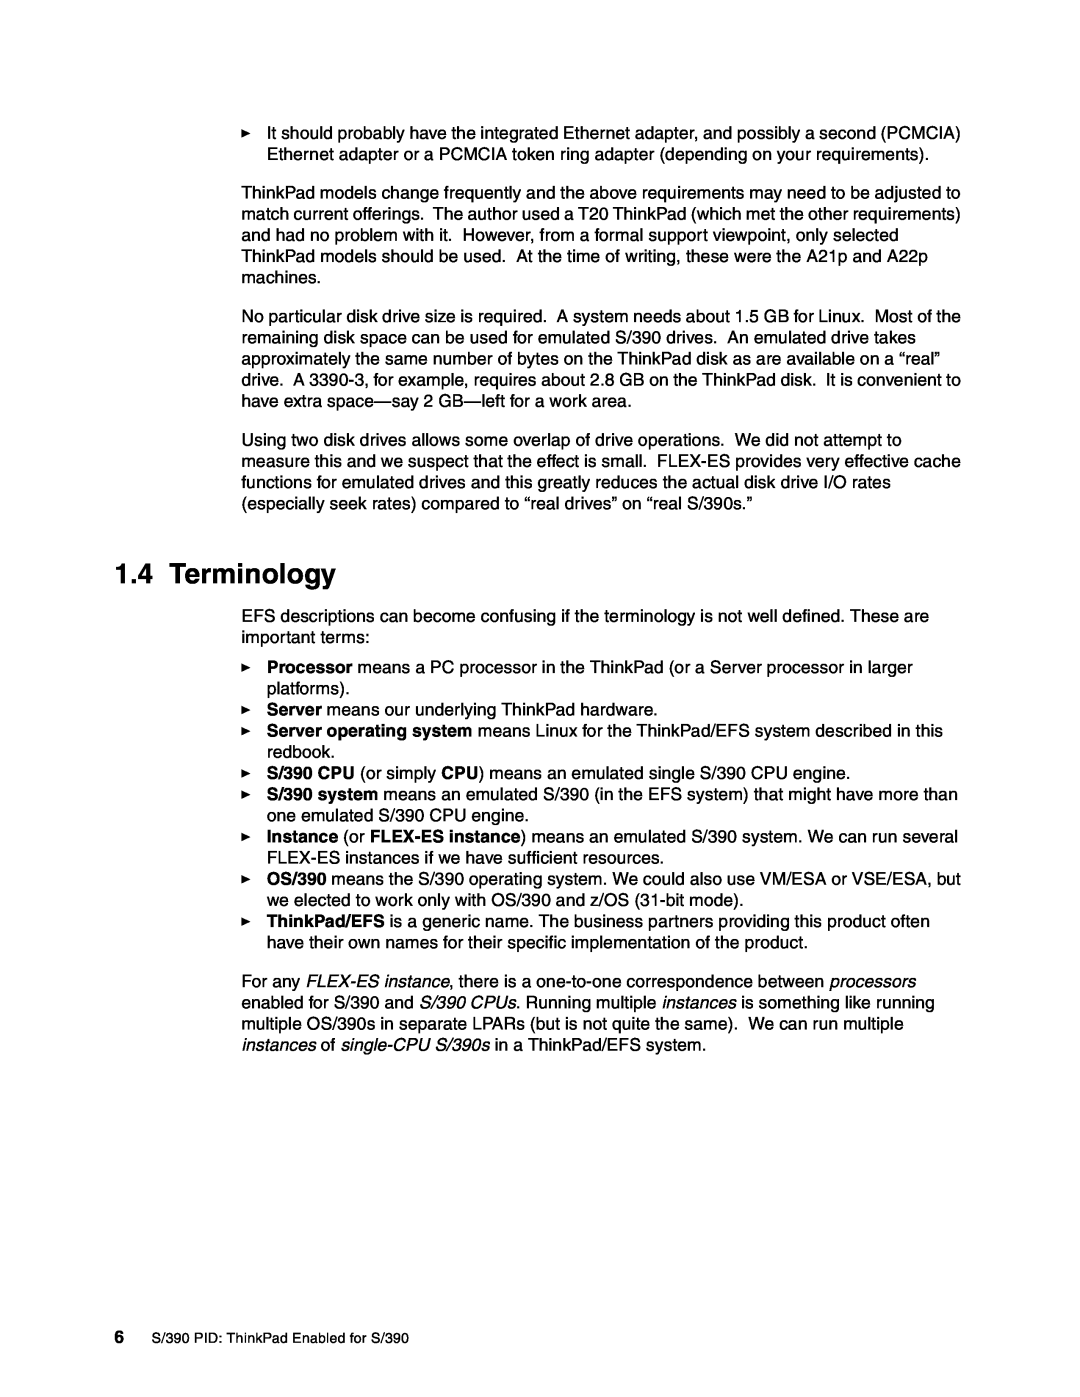 IBM s/390 manual Terminology 